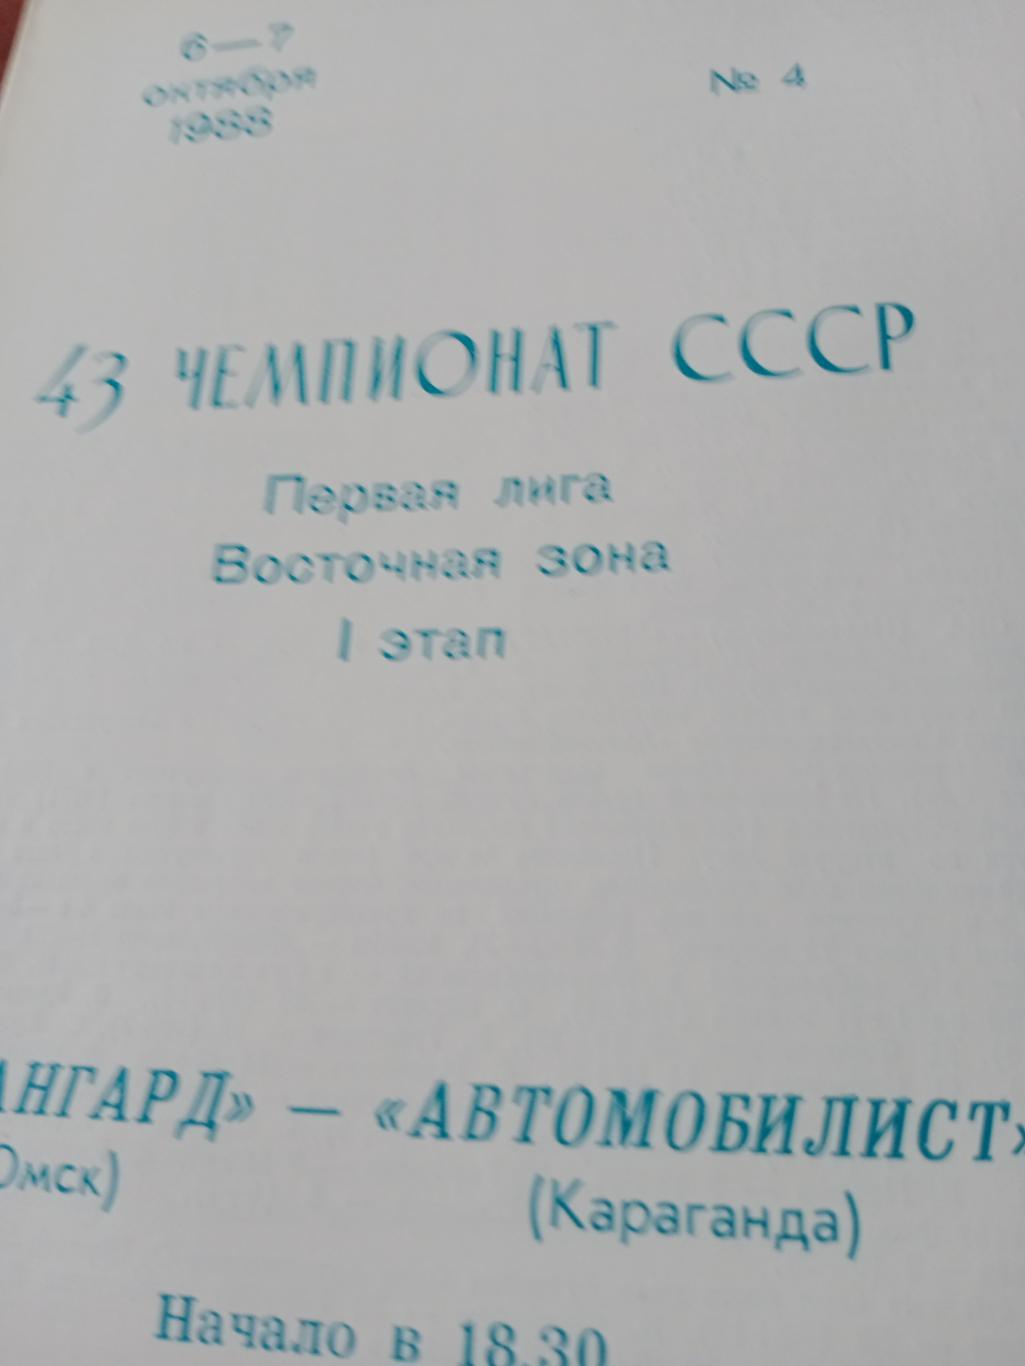 Авангард Омск - Автомобилист Караганда. 6 и 7 октября 1988 год